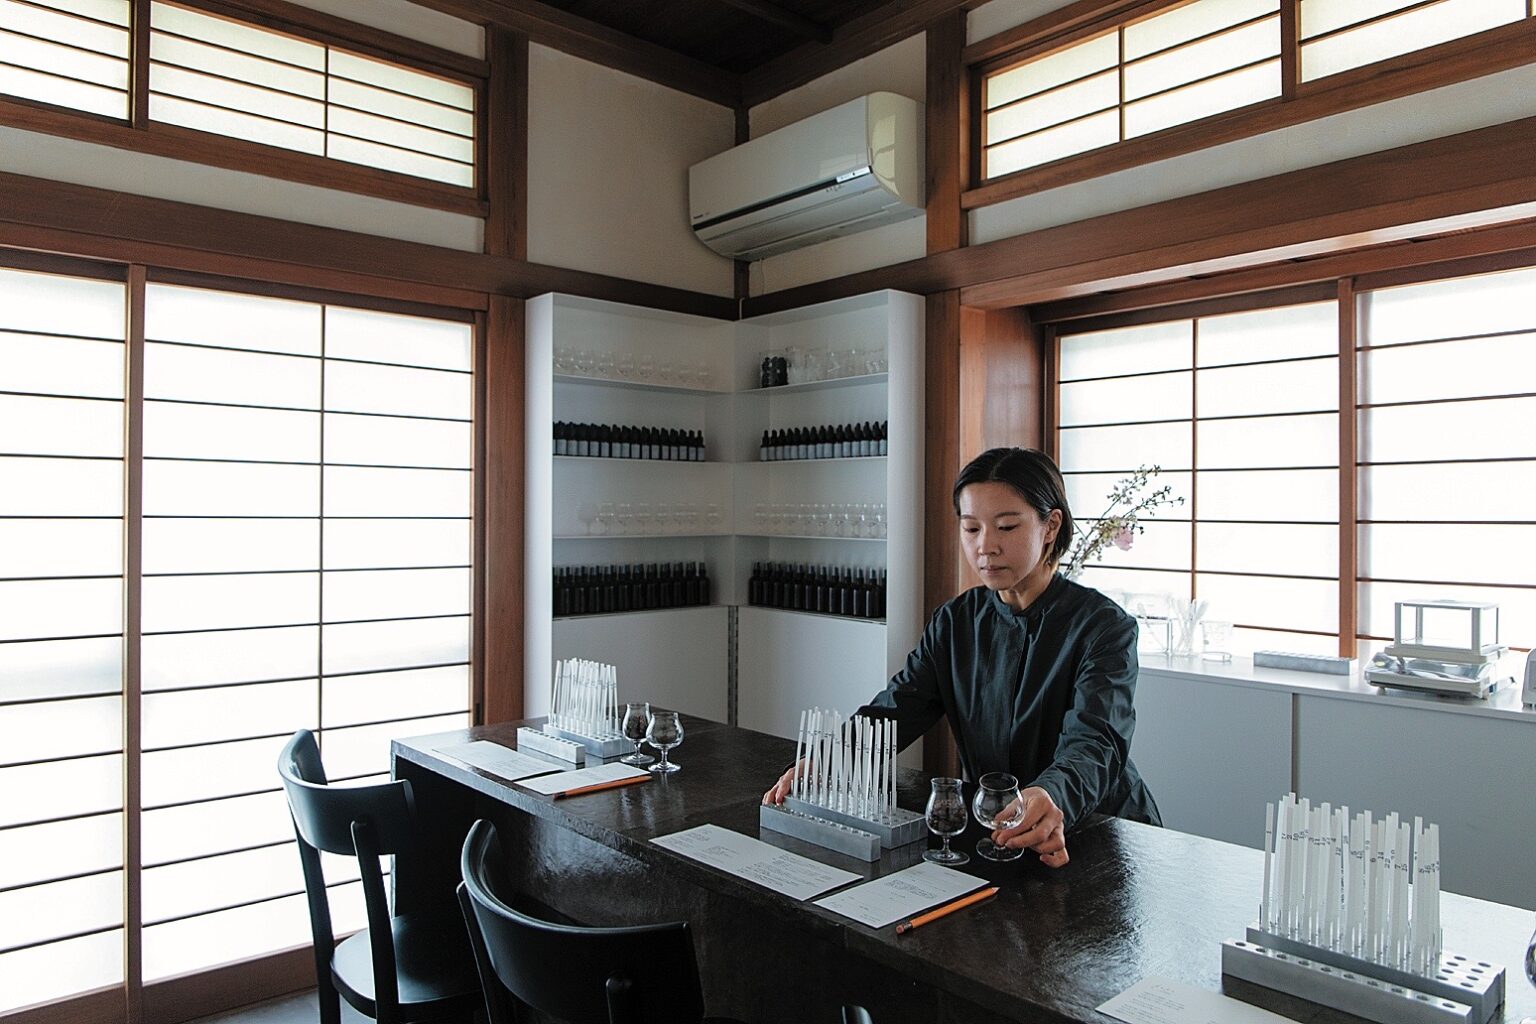 古民家リノベや移住者が開く店など、スローな動きのある鎌倉でも新しい動きが。〈OSAJI〉が開いた食と調香が楽しめる複合ショップ〈enso〉は古民家を素敵に活用。